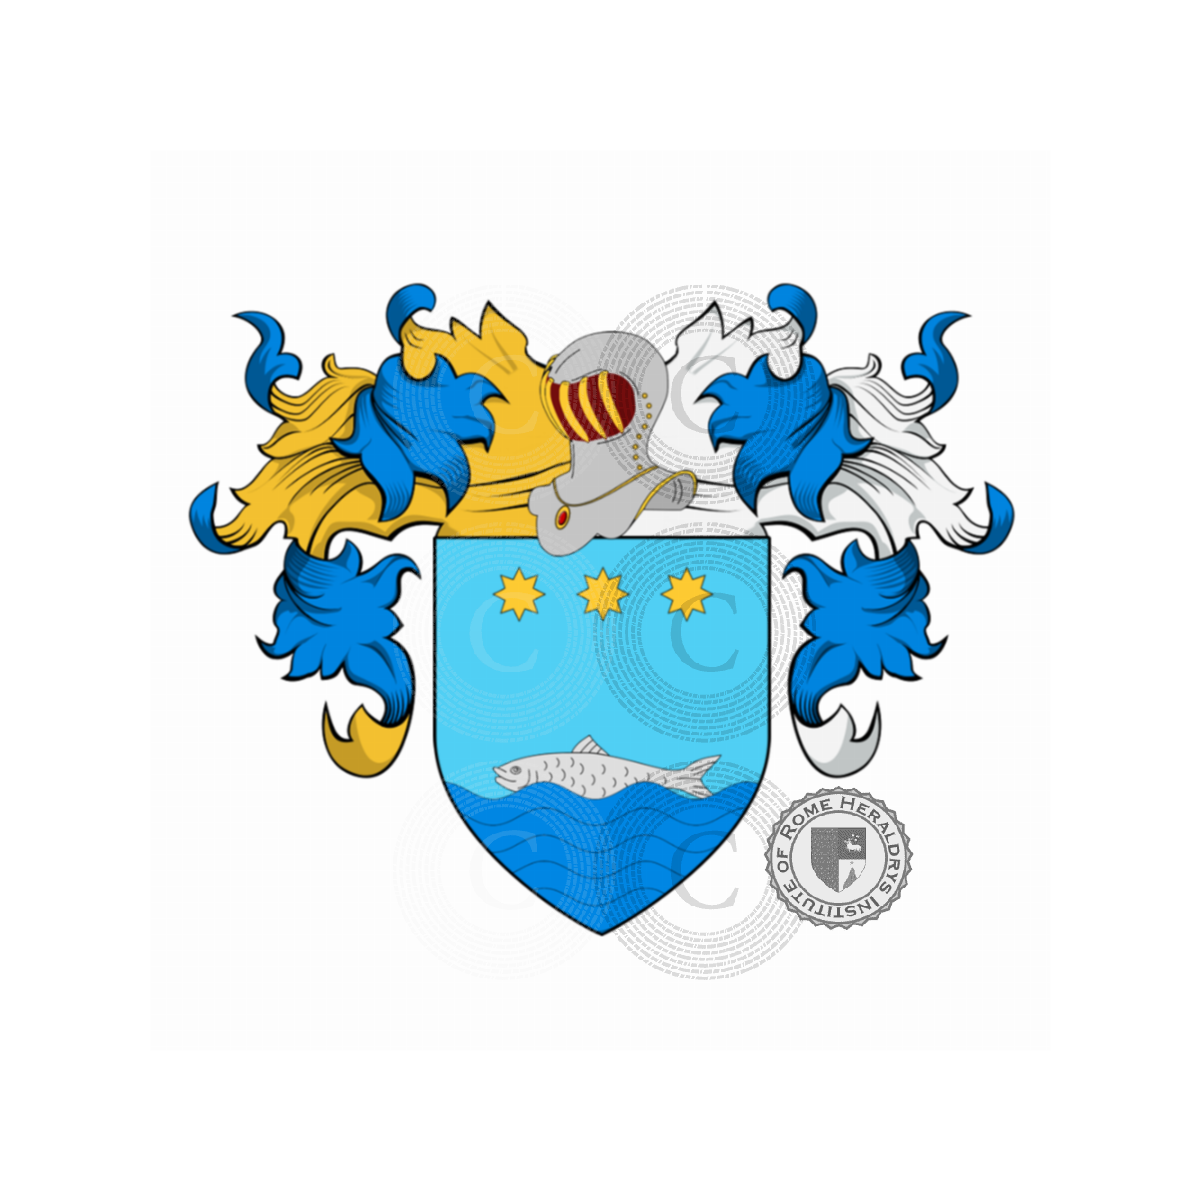 Coat of arms of familyImpellizzeri, Impellitieri,Impellizzeri,Pelizzer